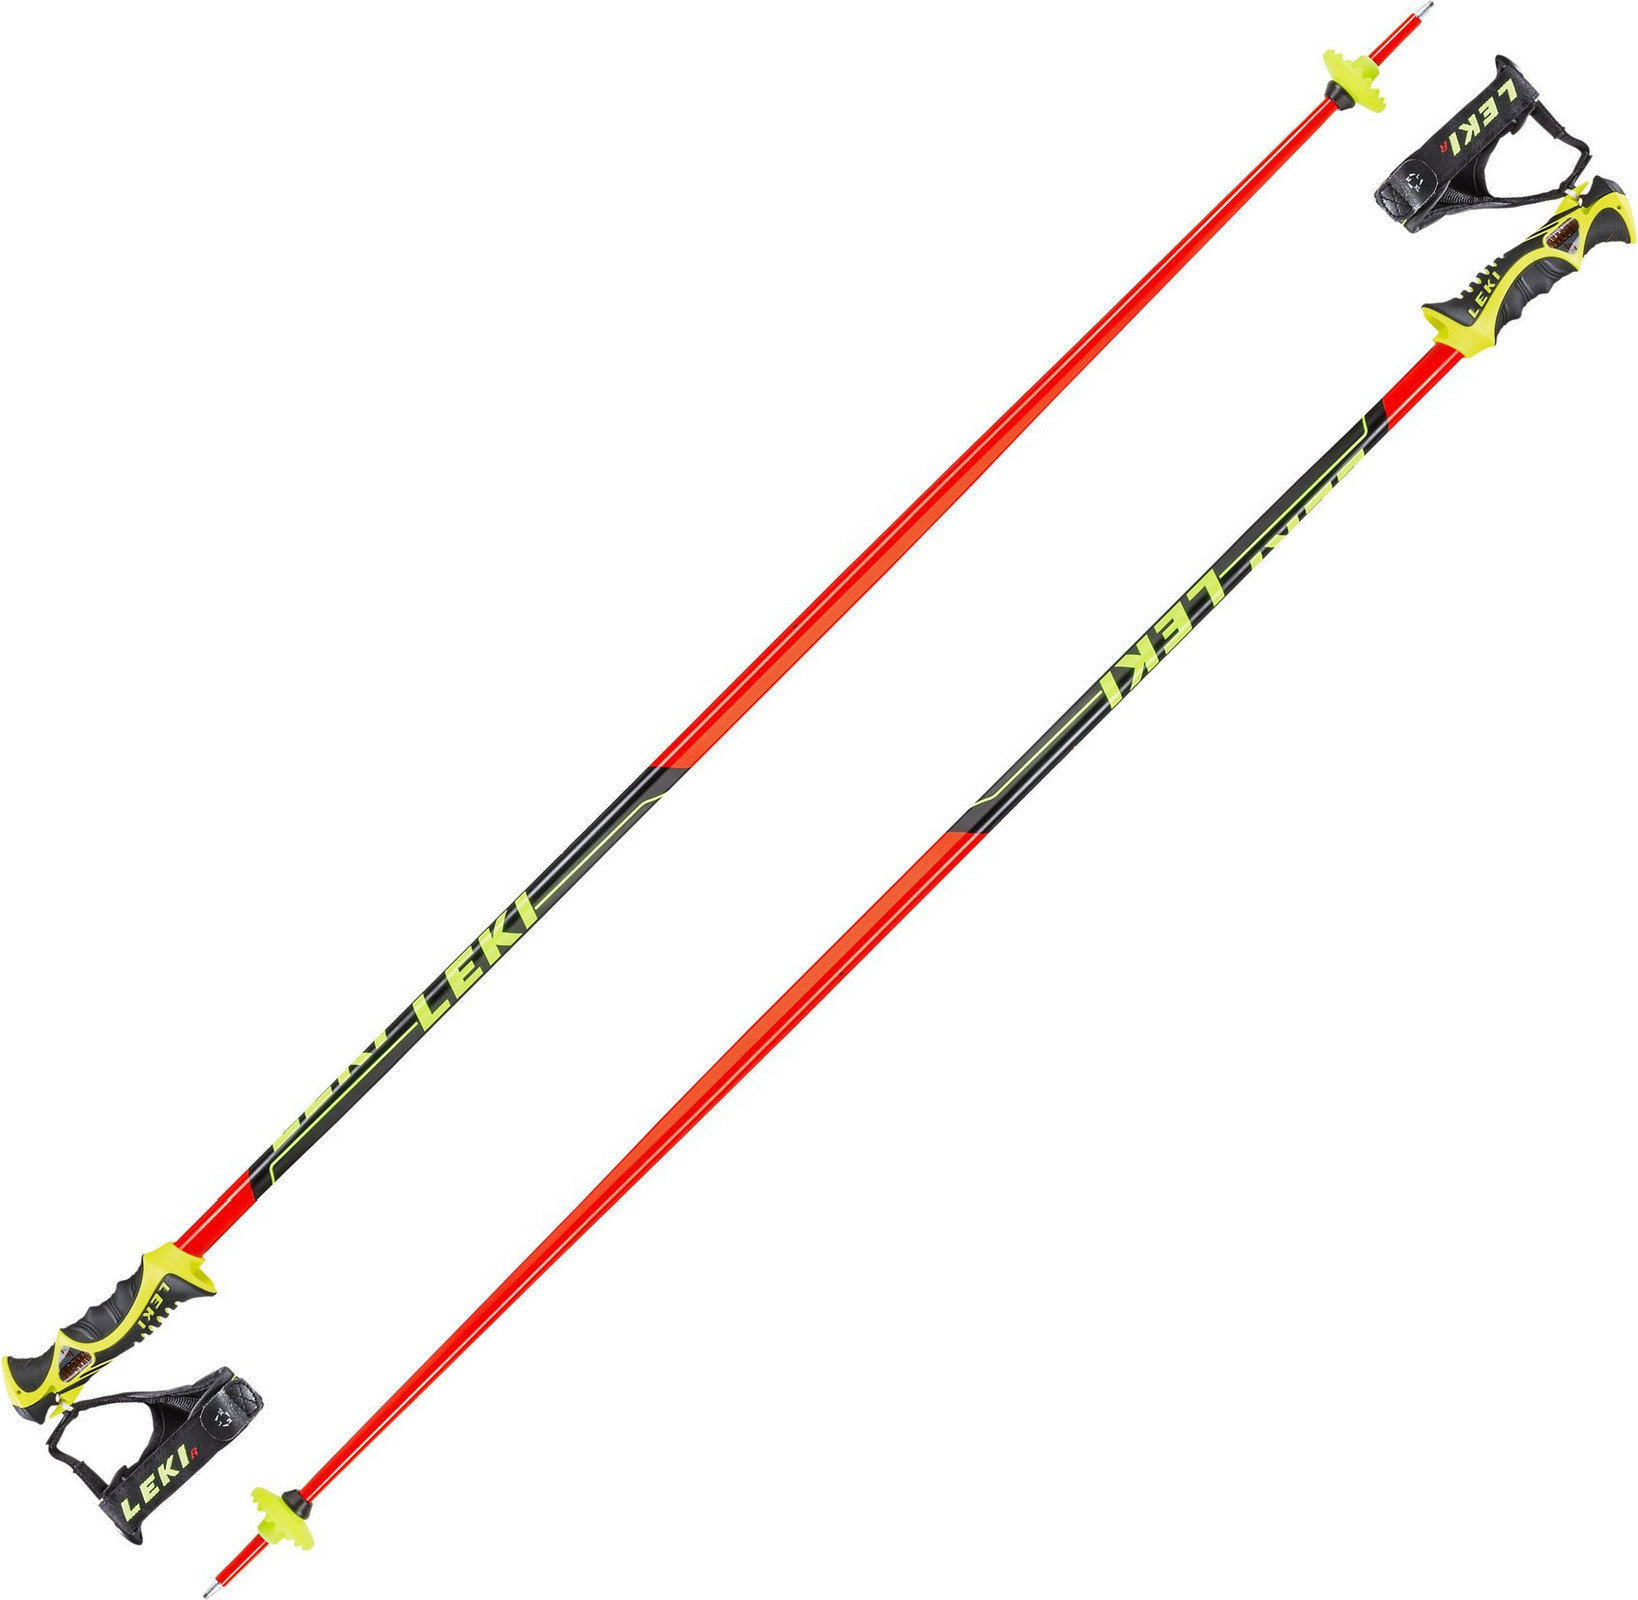 Bastões de esqui Leki Worldcup Racing SL Neonred/Black/White/Yellow 130 cm Bastões de esqui